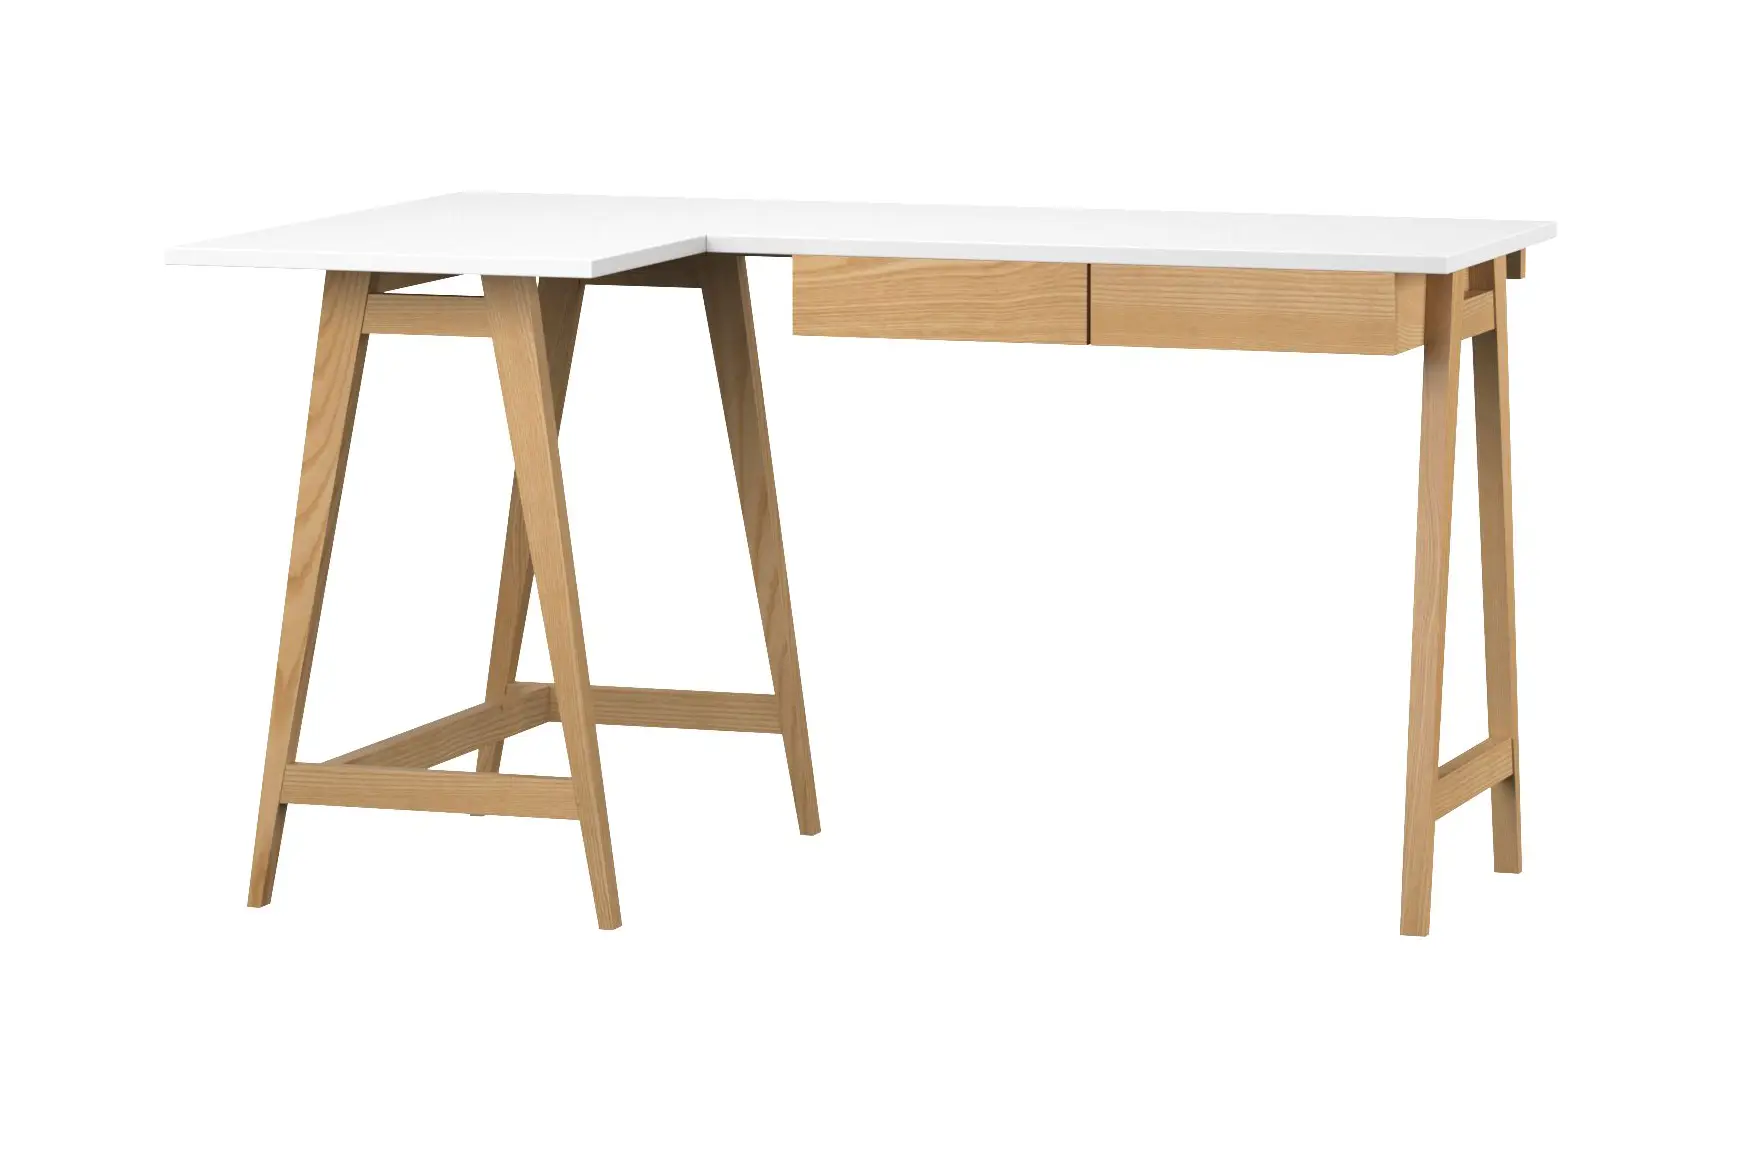 Schreibtisch Wei脽 115x85 Holz&MDF